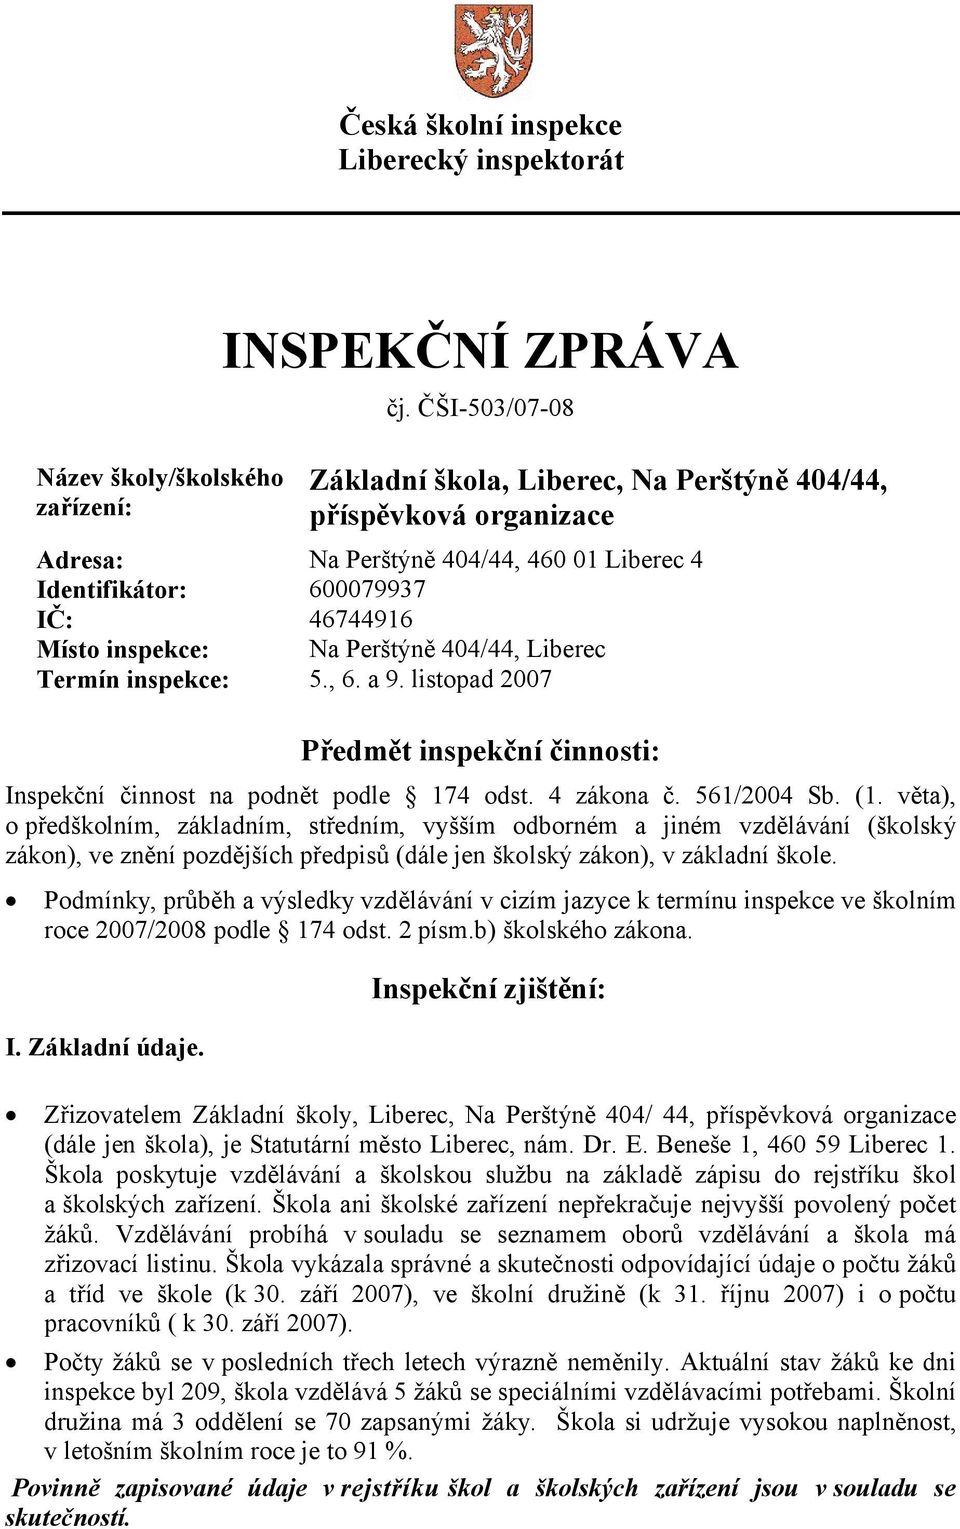 404/44, Liberec Termín inspekce: 5., 6. a 9. listopad 2007 Předmět inspekční činnosti: Inspekční činnost na podnět podle 174 odst. 4 zákona č. 561/2004 Sb. (1.